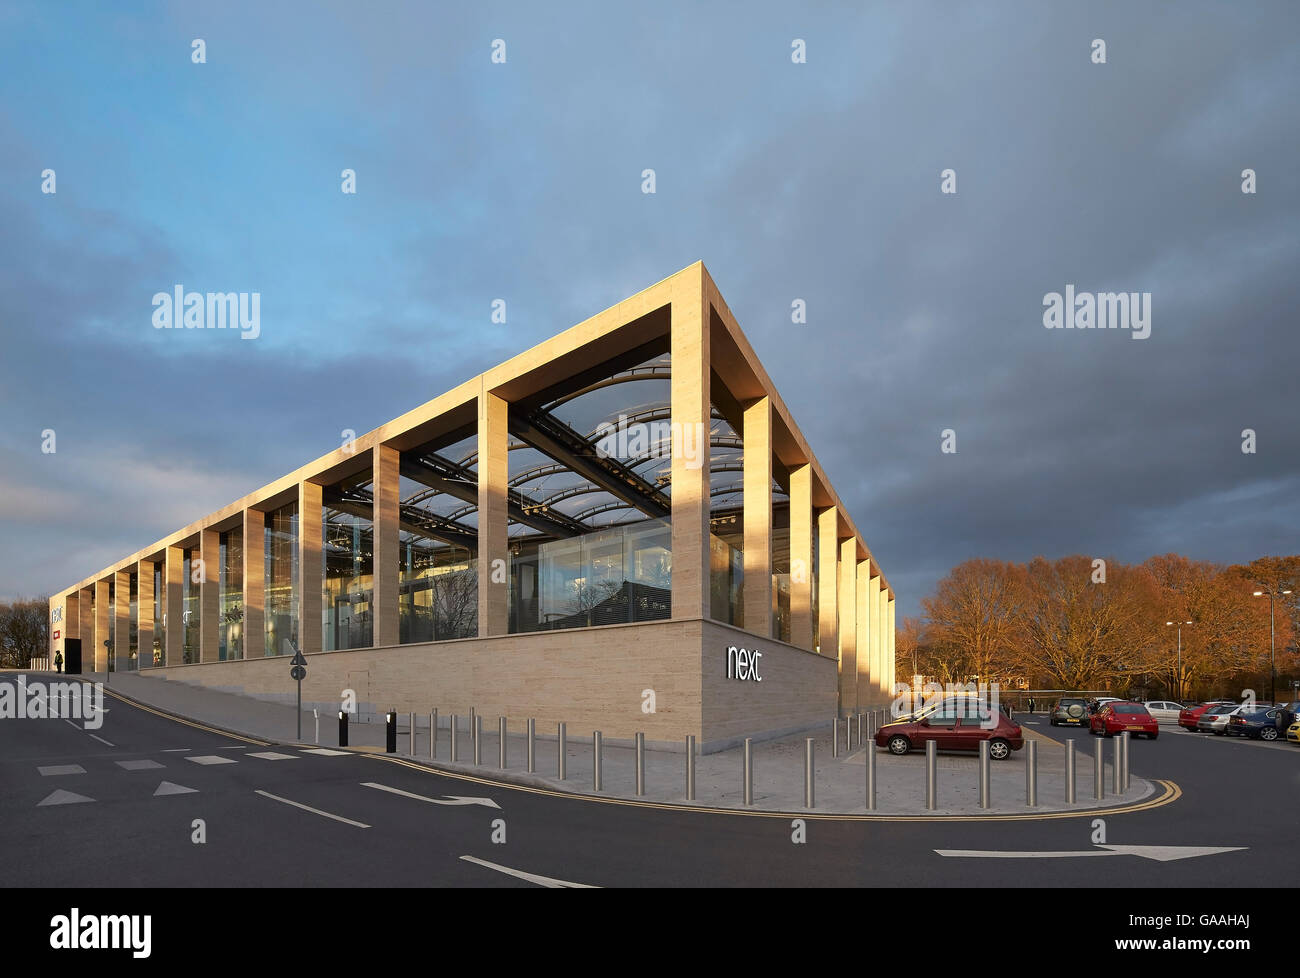 Élévation de la façade d'angle d'entrée colonnade de l'autre côté de la rue. Suivant - Maison et Jardin Magasins, Southampton, Royaume-Uni. Architecte : Stanton Williams, 2014. Banque D'Images